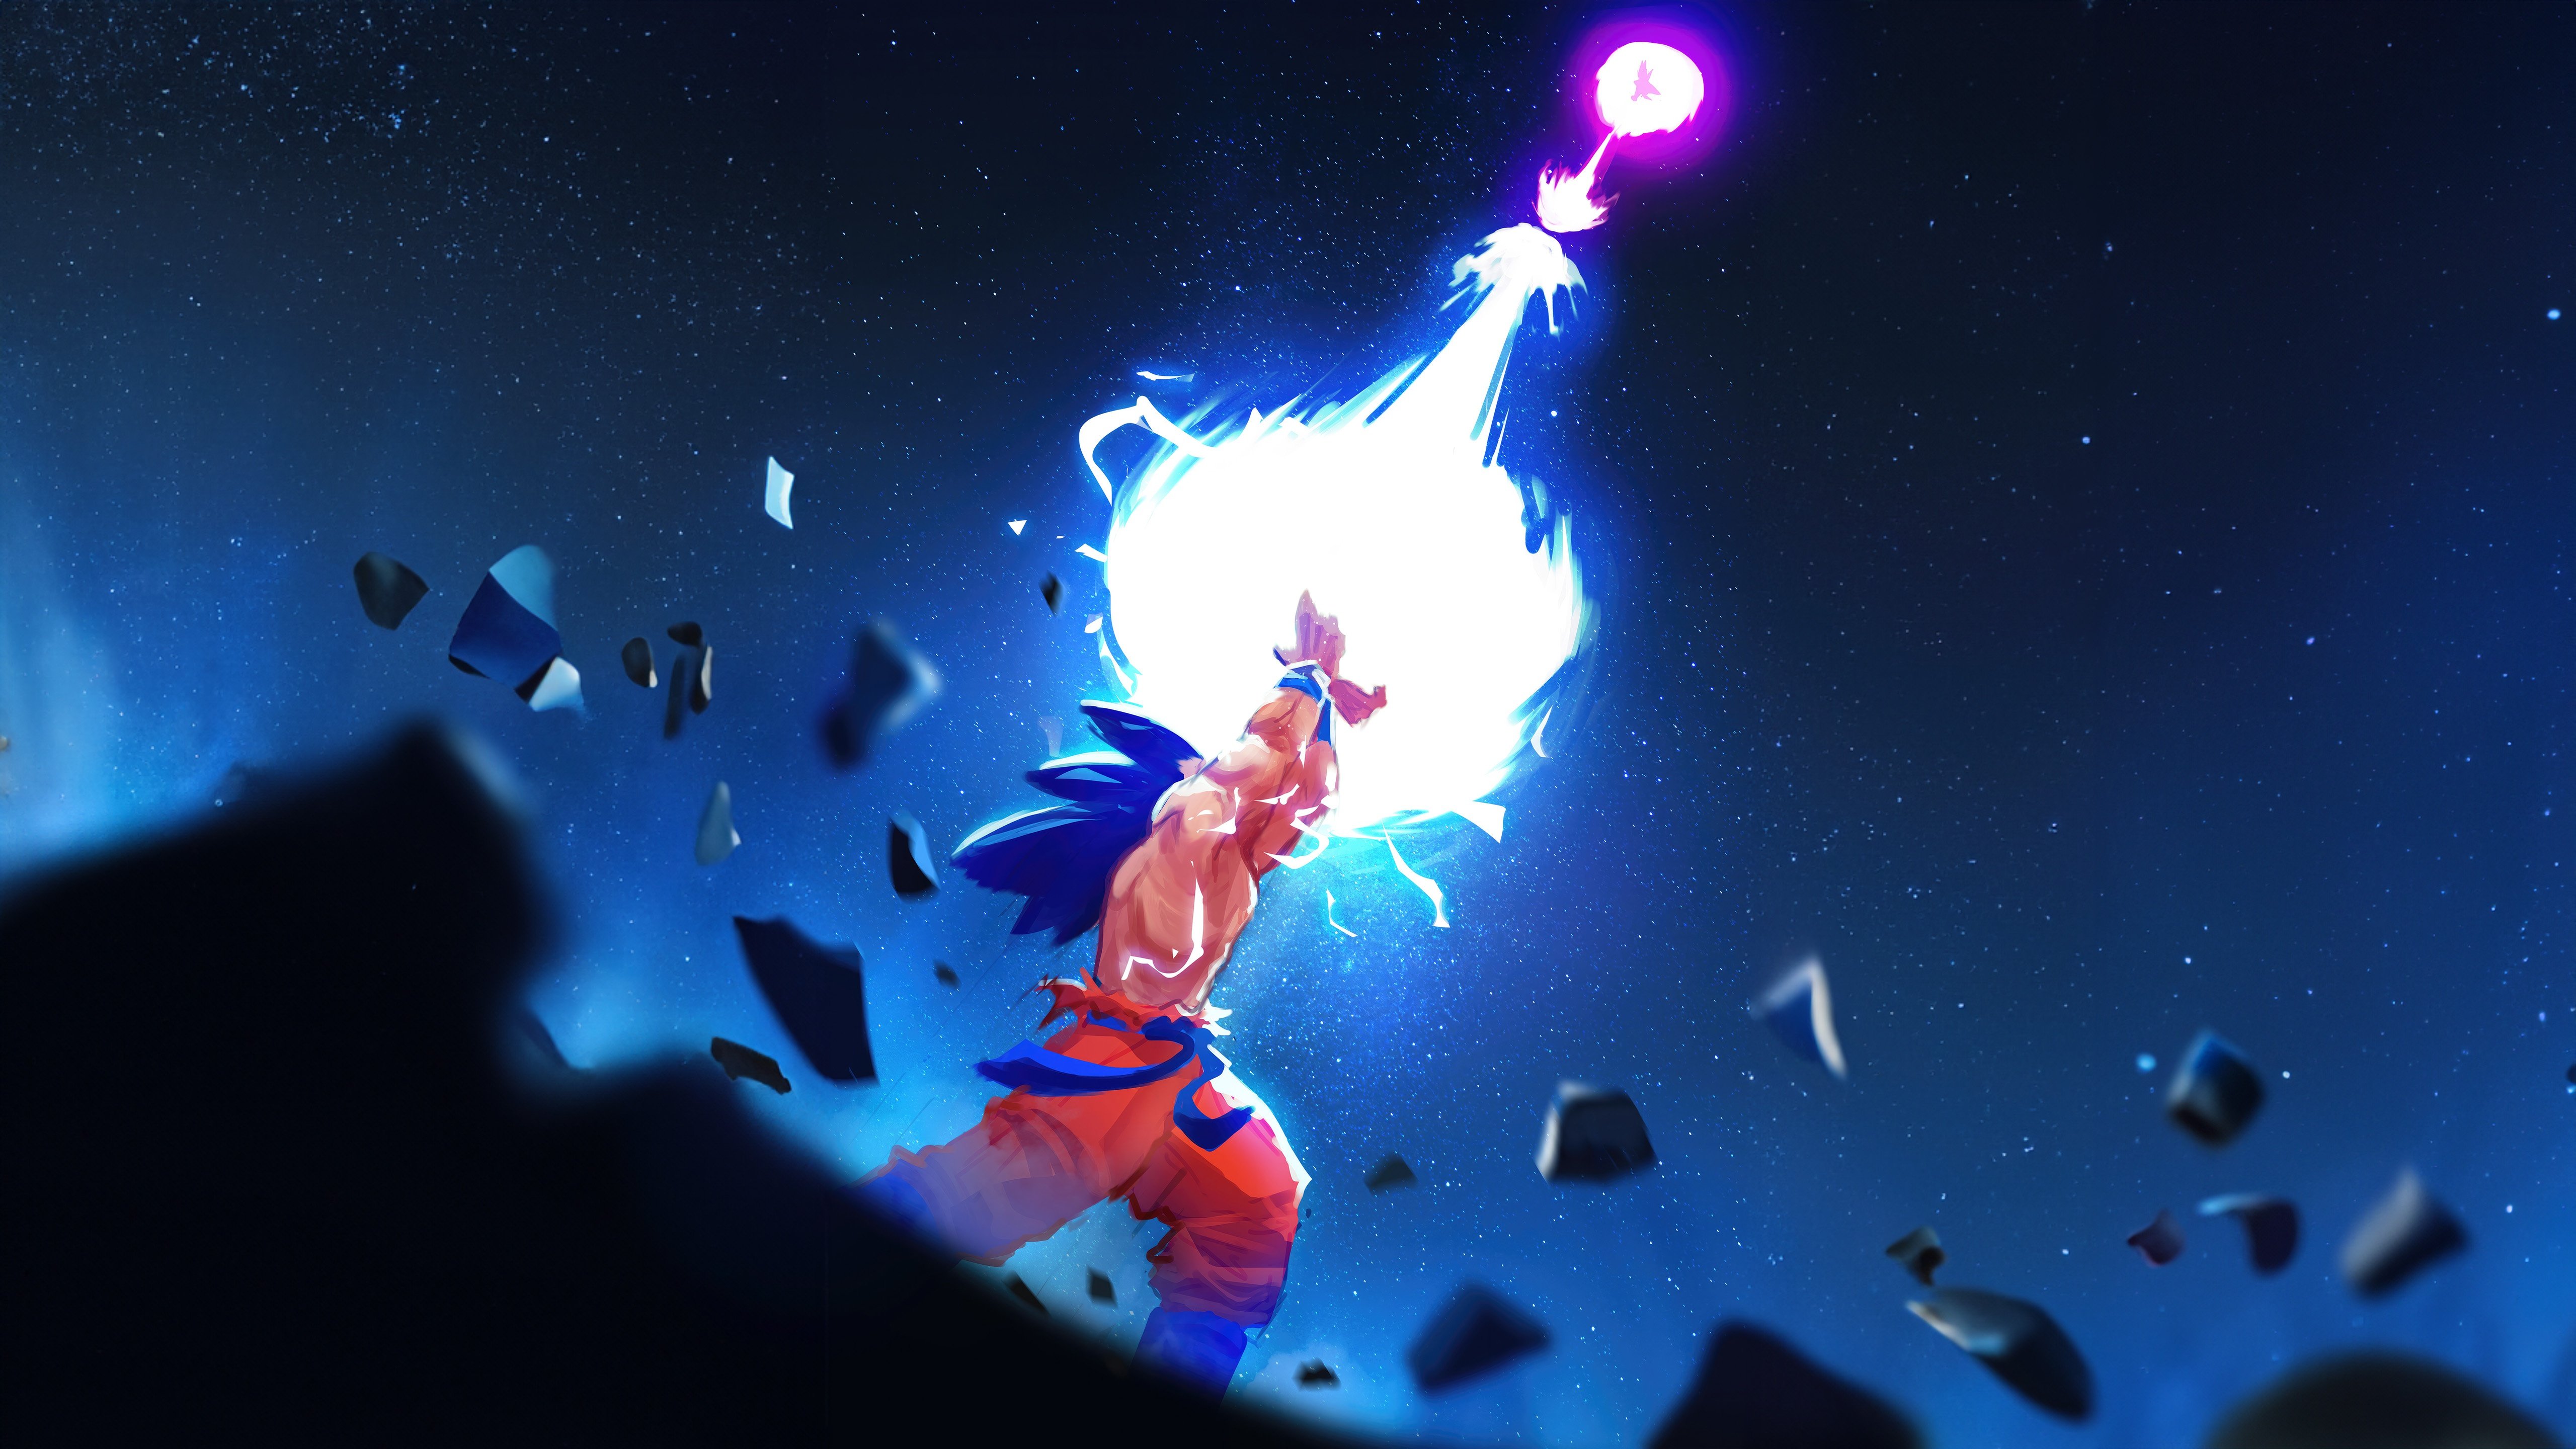 Fondos de pantalla Goku vs Vegeta Illustration